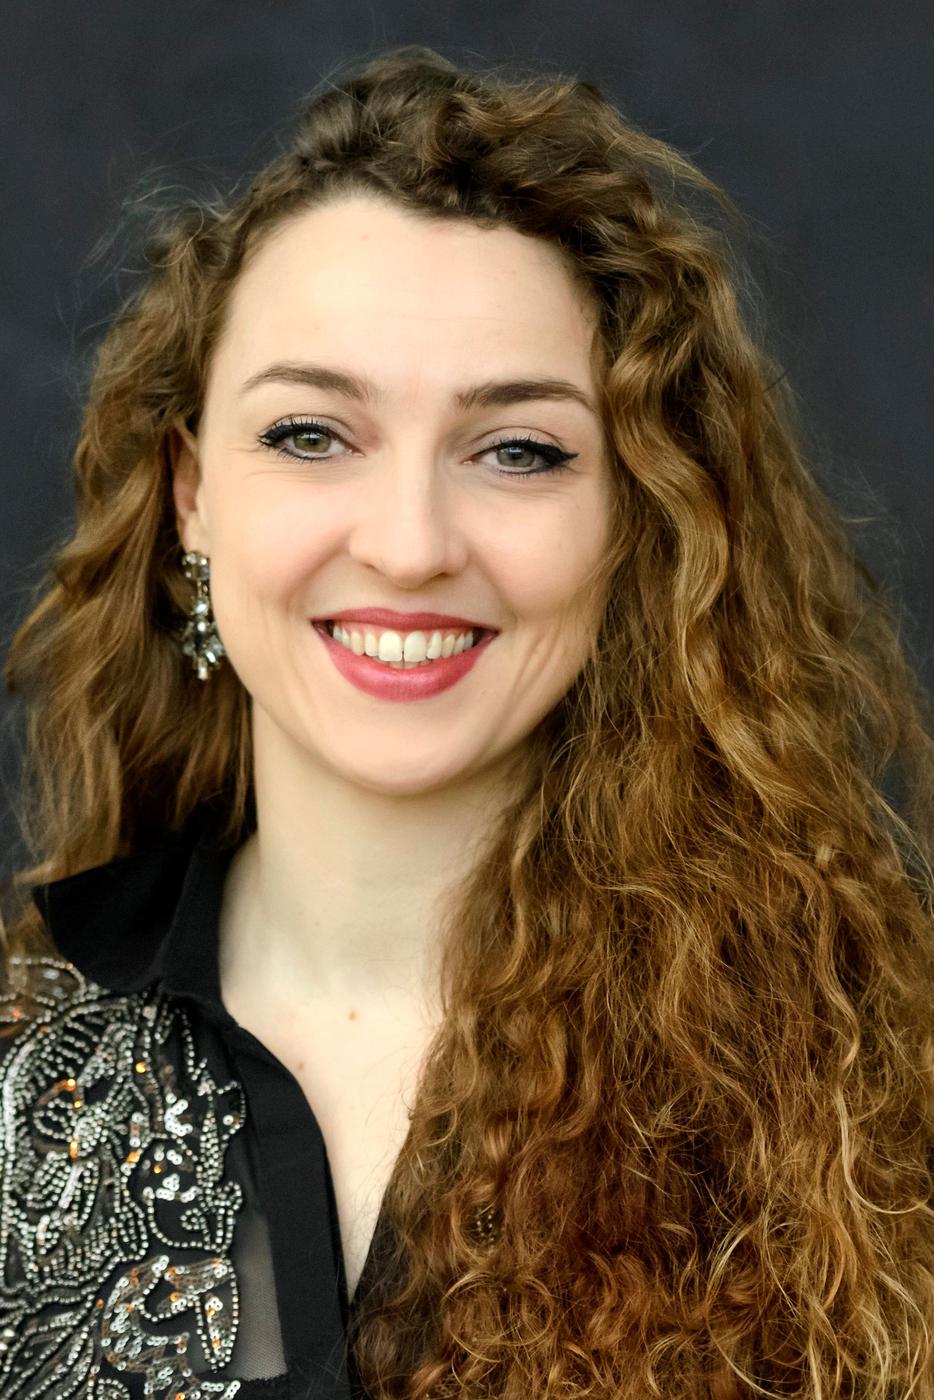 Florence Losseau ist neu im Karlsruher Opernensemble und gehört zur Besetzung der Neuproduktion von „Carmen“ (Premiere: 21.01.2023)